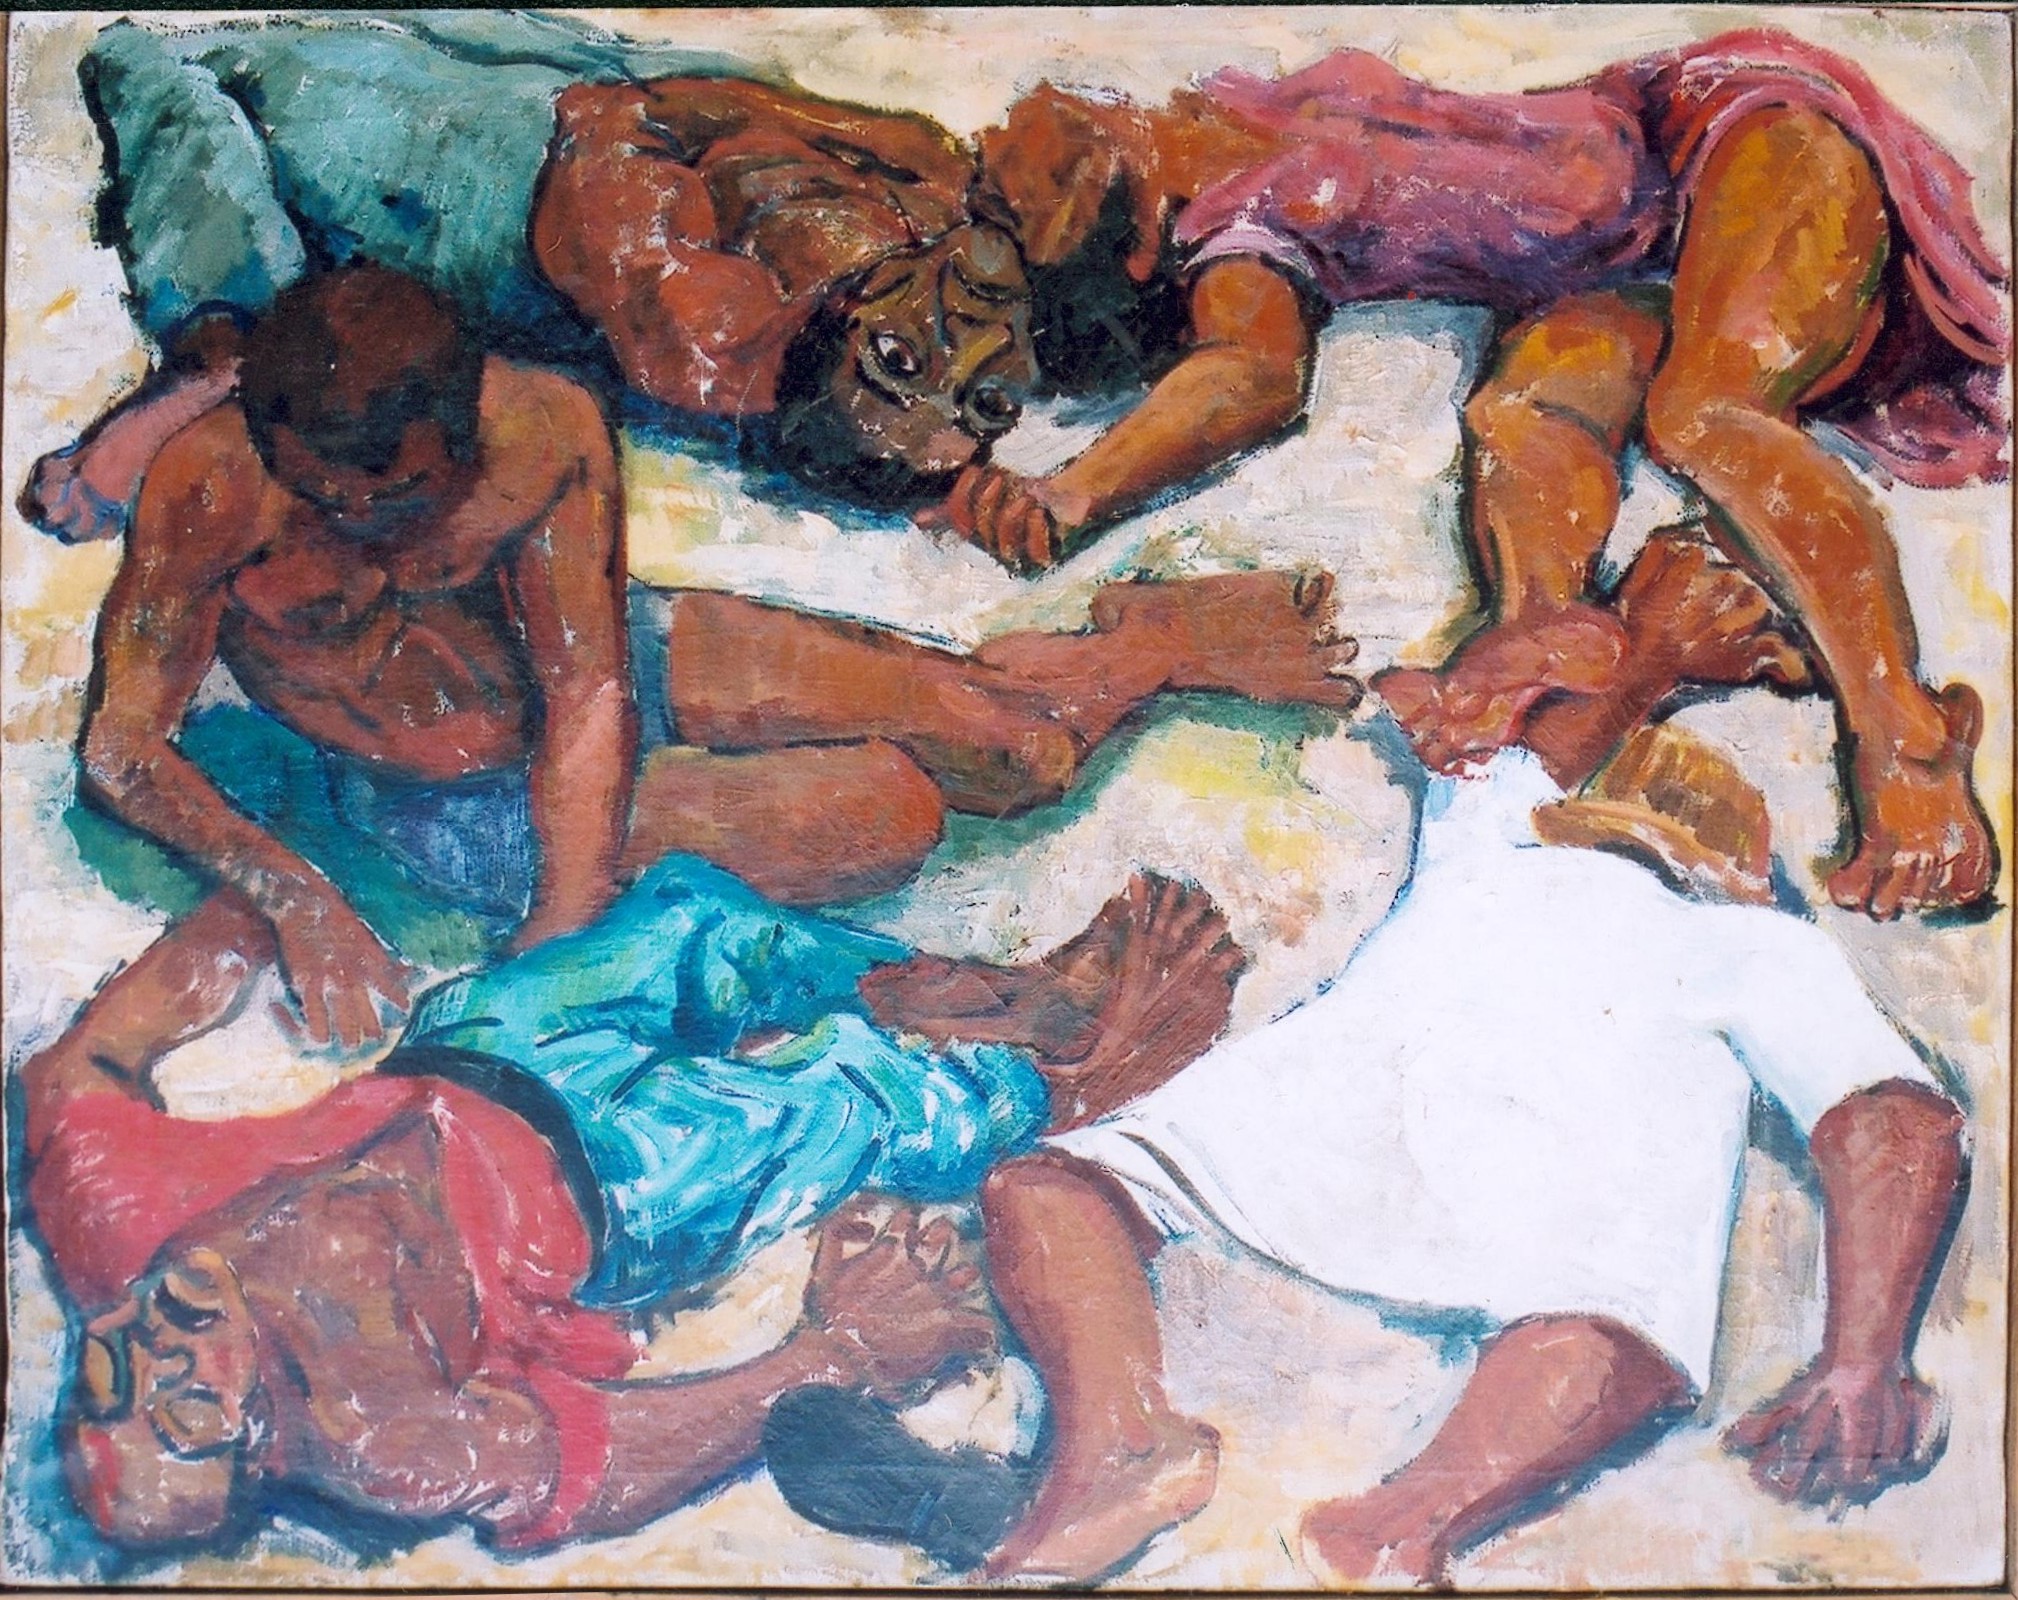 Obraz przedstawia ciała czarnoskórych osób, odnosi się do wydarzeń z Południowej Afryki w miejscowości Sharpeville w 1960 roku, gdzie dosło do masakry osób czarnoskórych